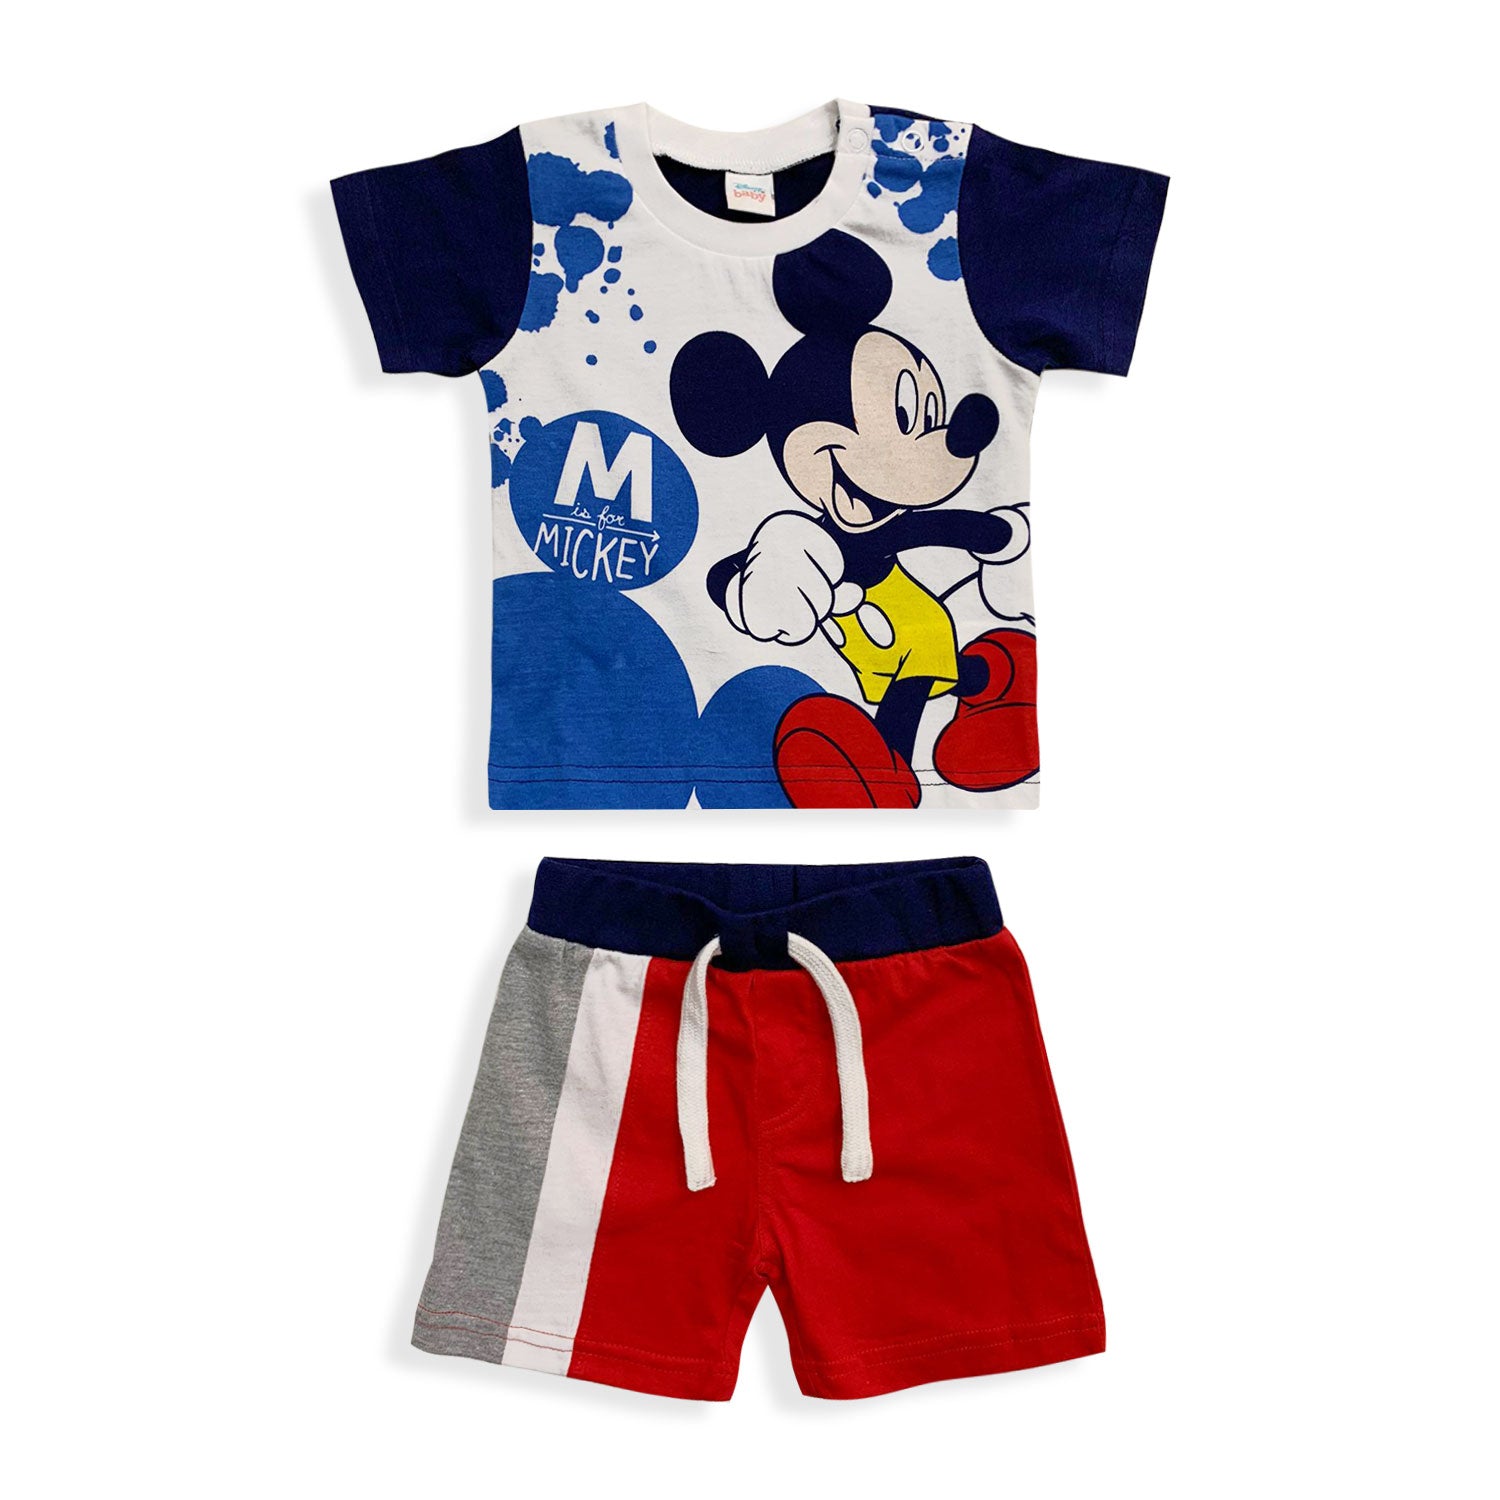 Pigiama Disney Mickey Mouse in cotone mezze maniche neonato bambino 5492